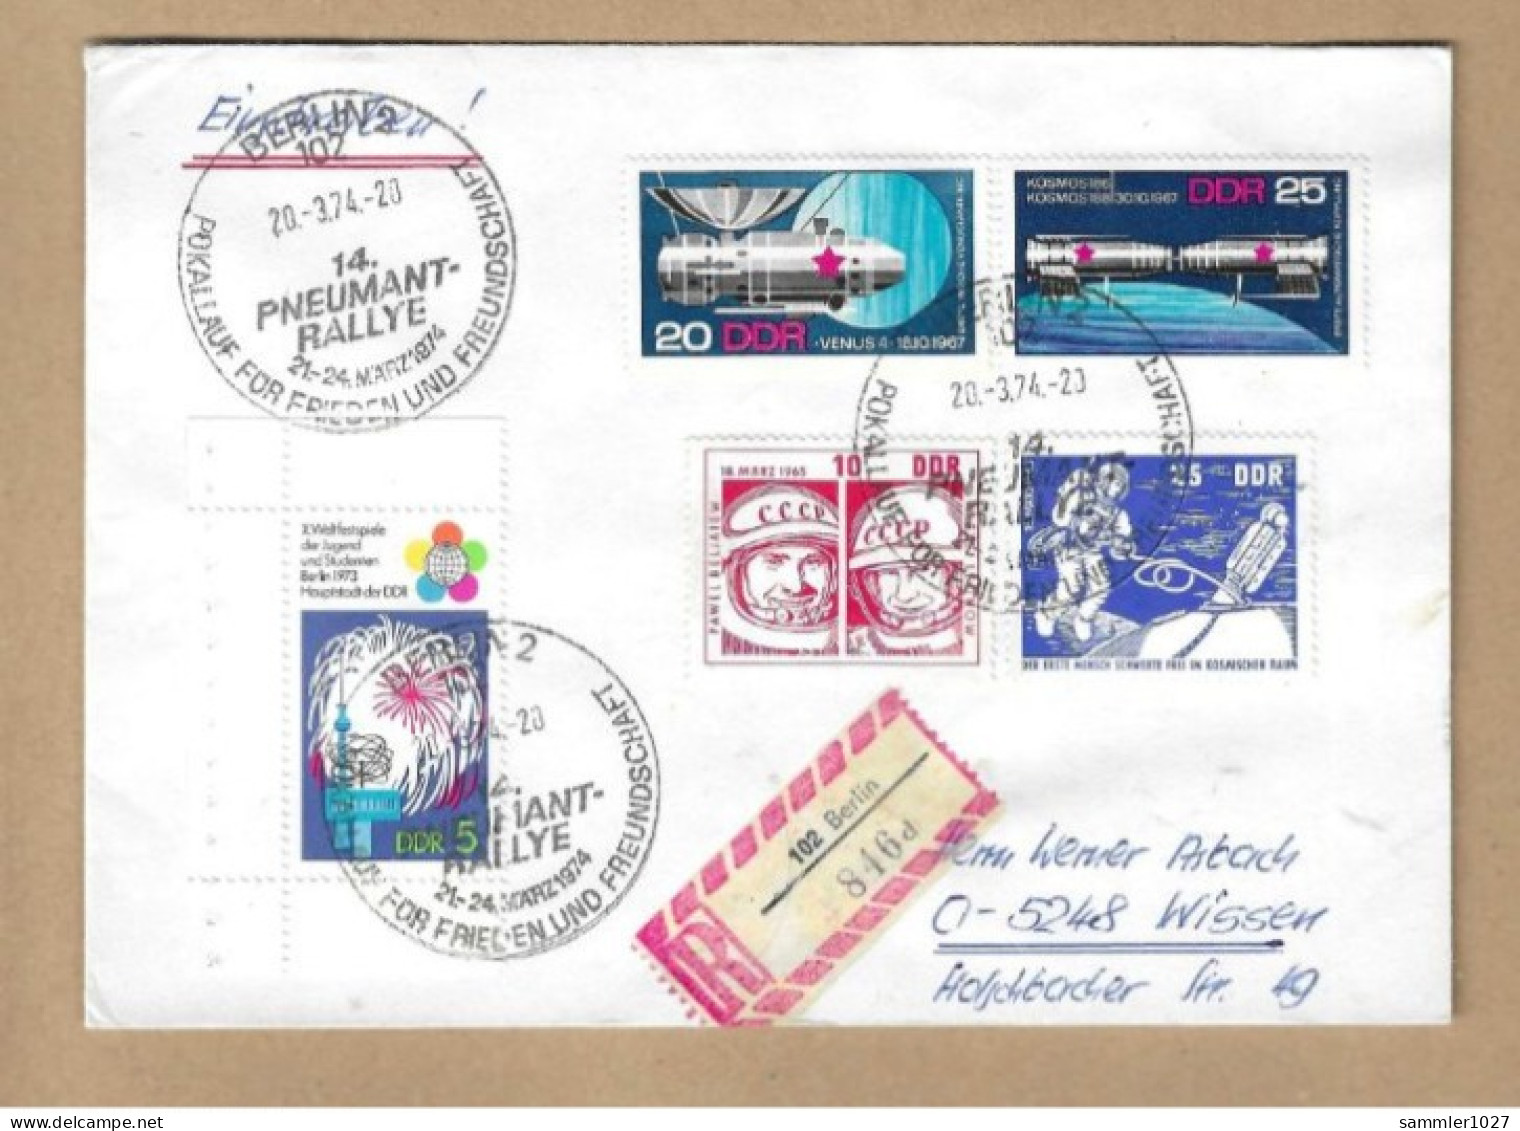 Los Vom 05.05  Einschreiben-Briefumschlöag Aus Berlin 1974 Pneumat Rallye - Covers & Documents